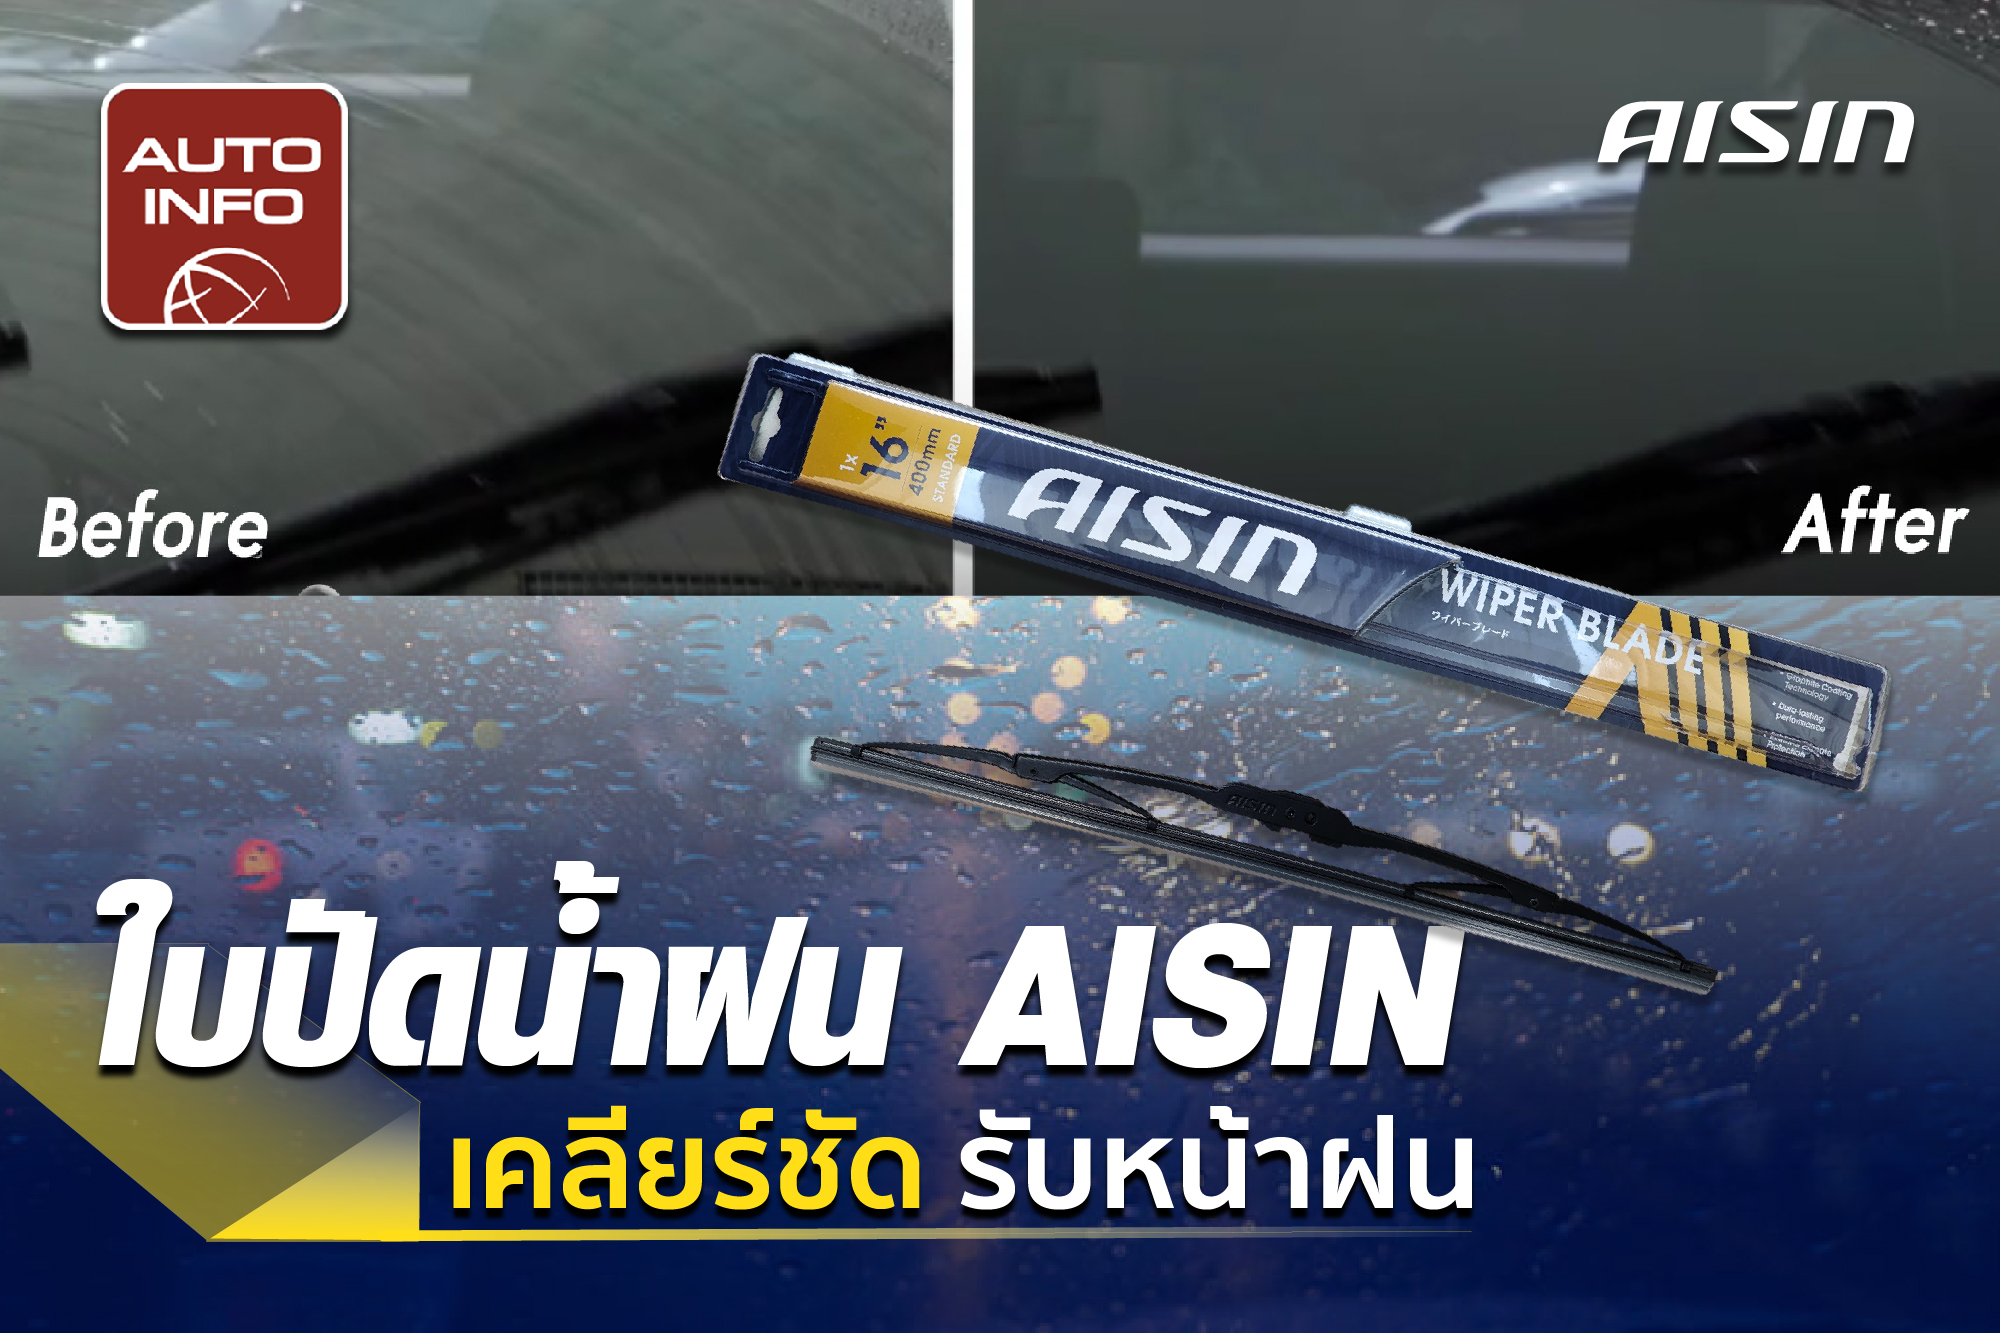 ใบปัดน้ำฝน AISIN เคลียร์ชัด รับหน้าฝน